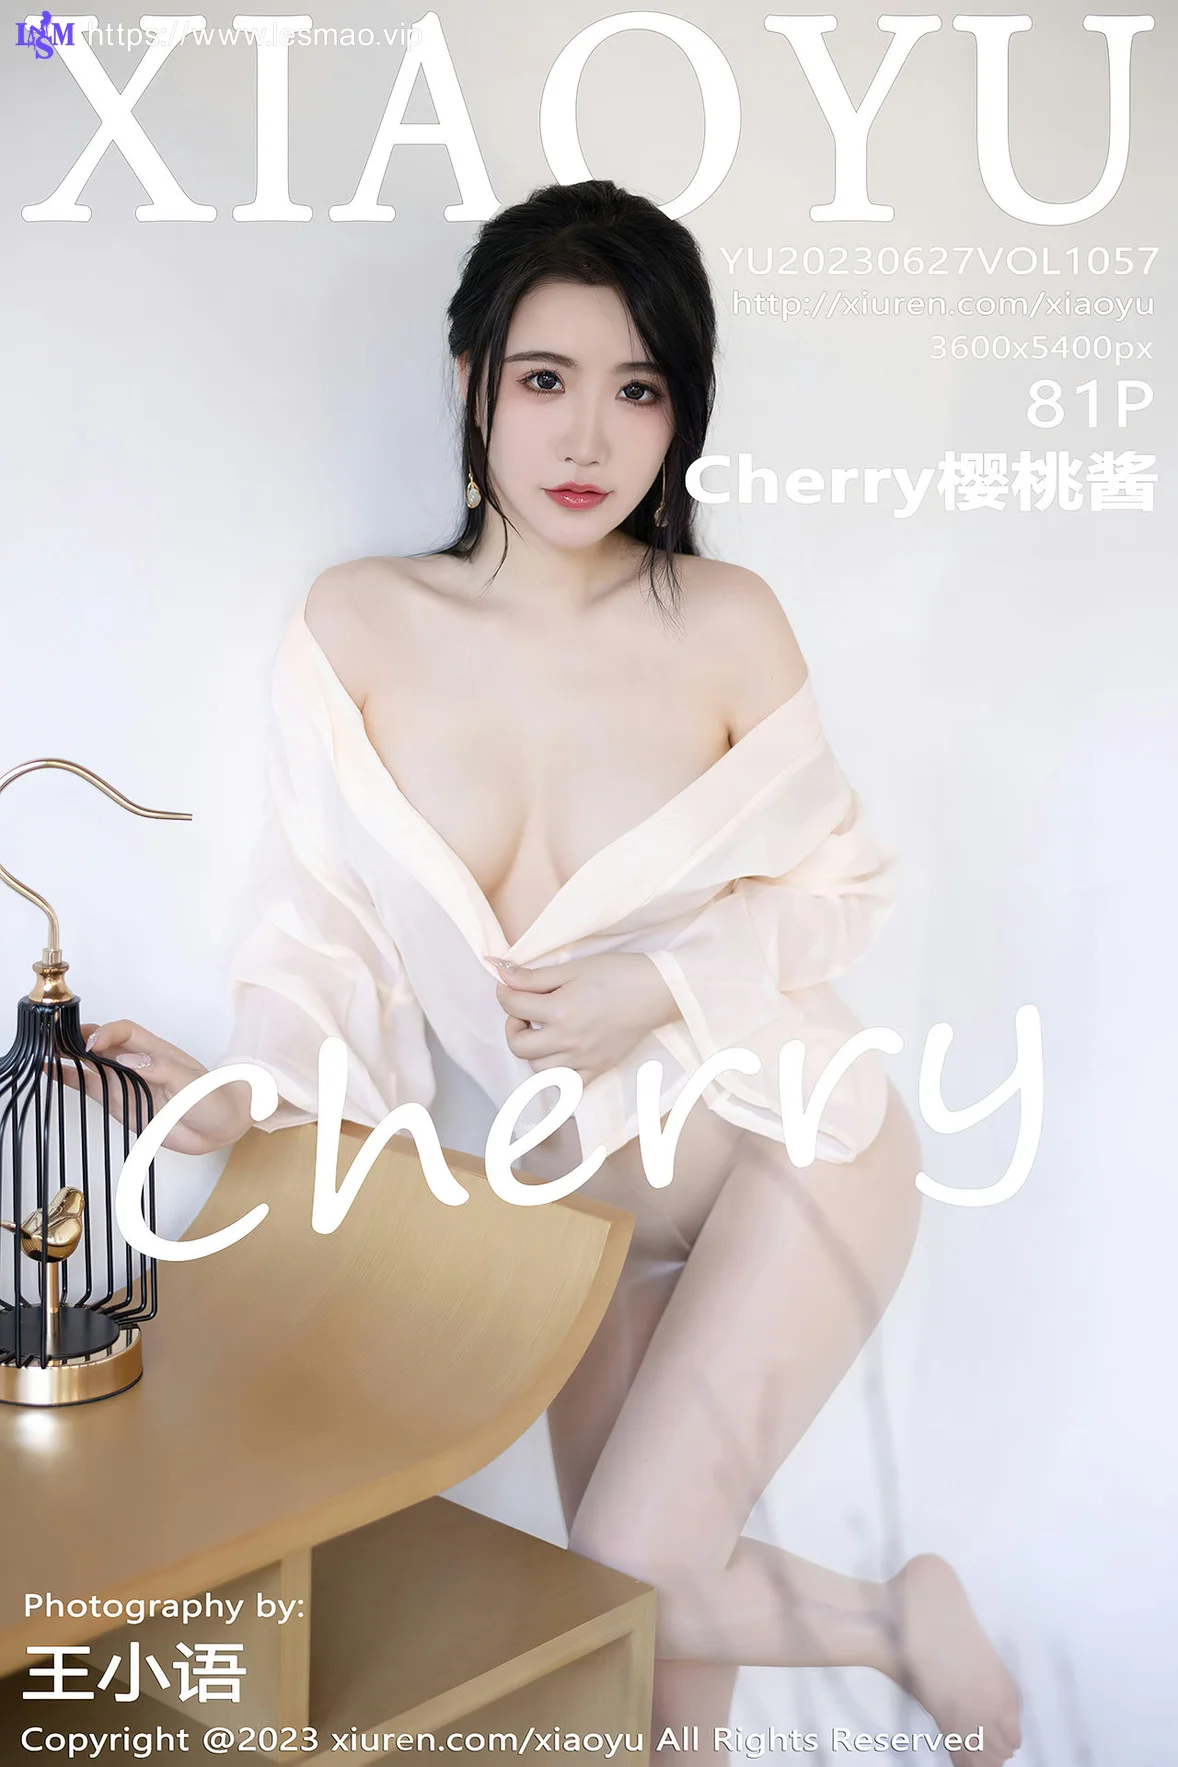 XIAOYU  语画界 Vol.1057  Cherry樱桃酱 淡蓝色古装杭州旅拍3 - 2